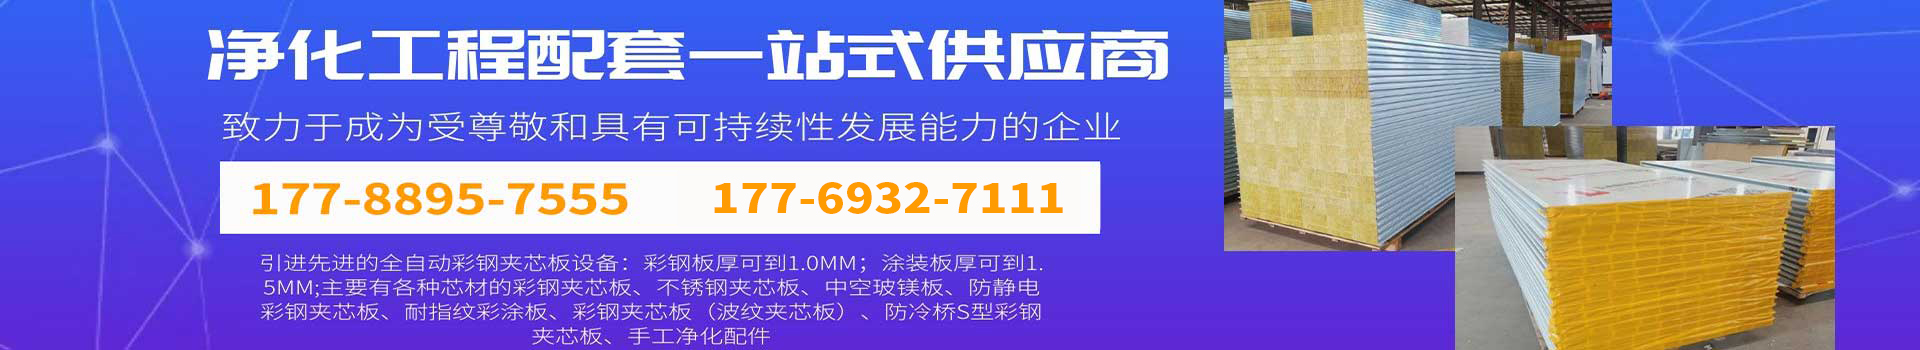 火博官方|中国有限公司官网